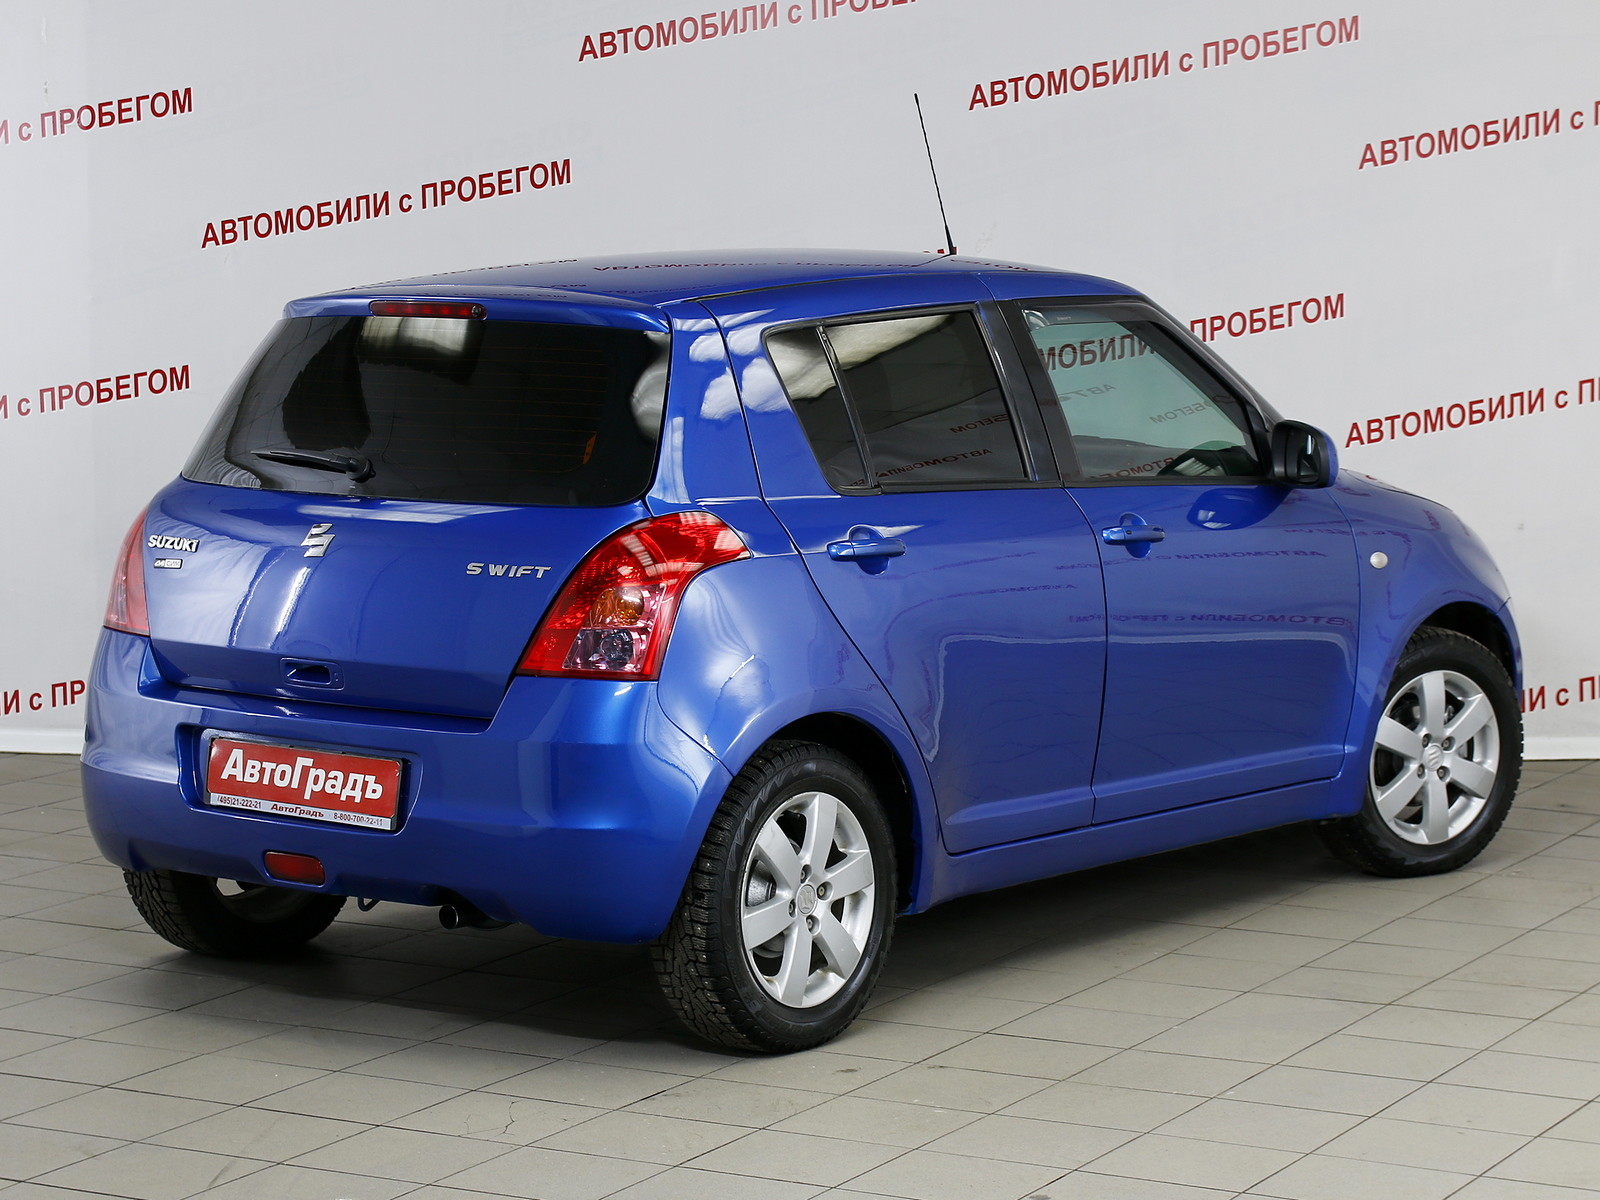 Недорогие Машины Купить В Новосибирске